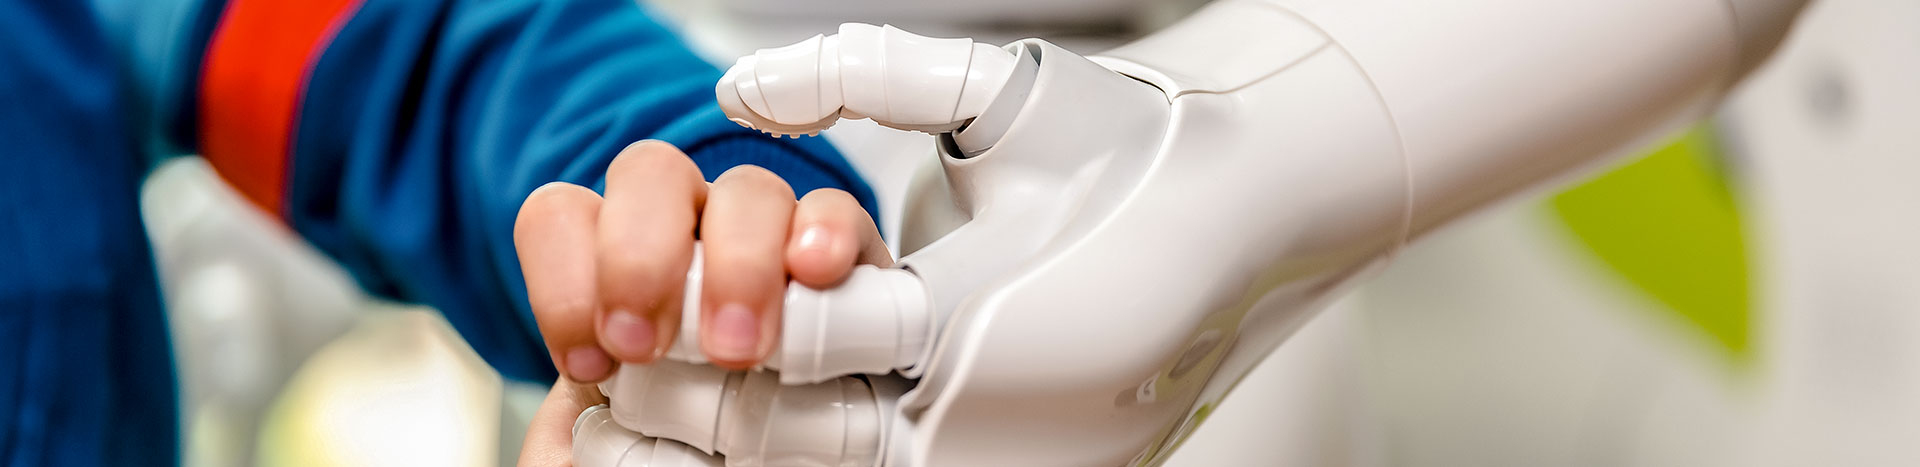 Fotografia przedstawia dłoń dziecka, która ściska dłoń robota.